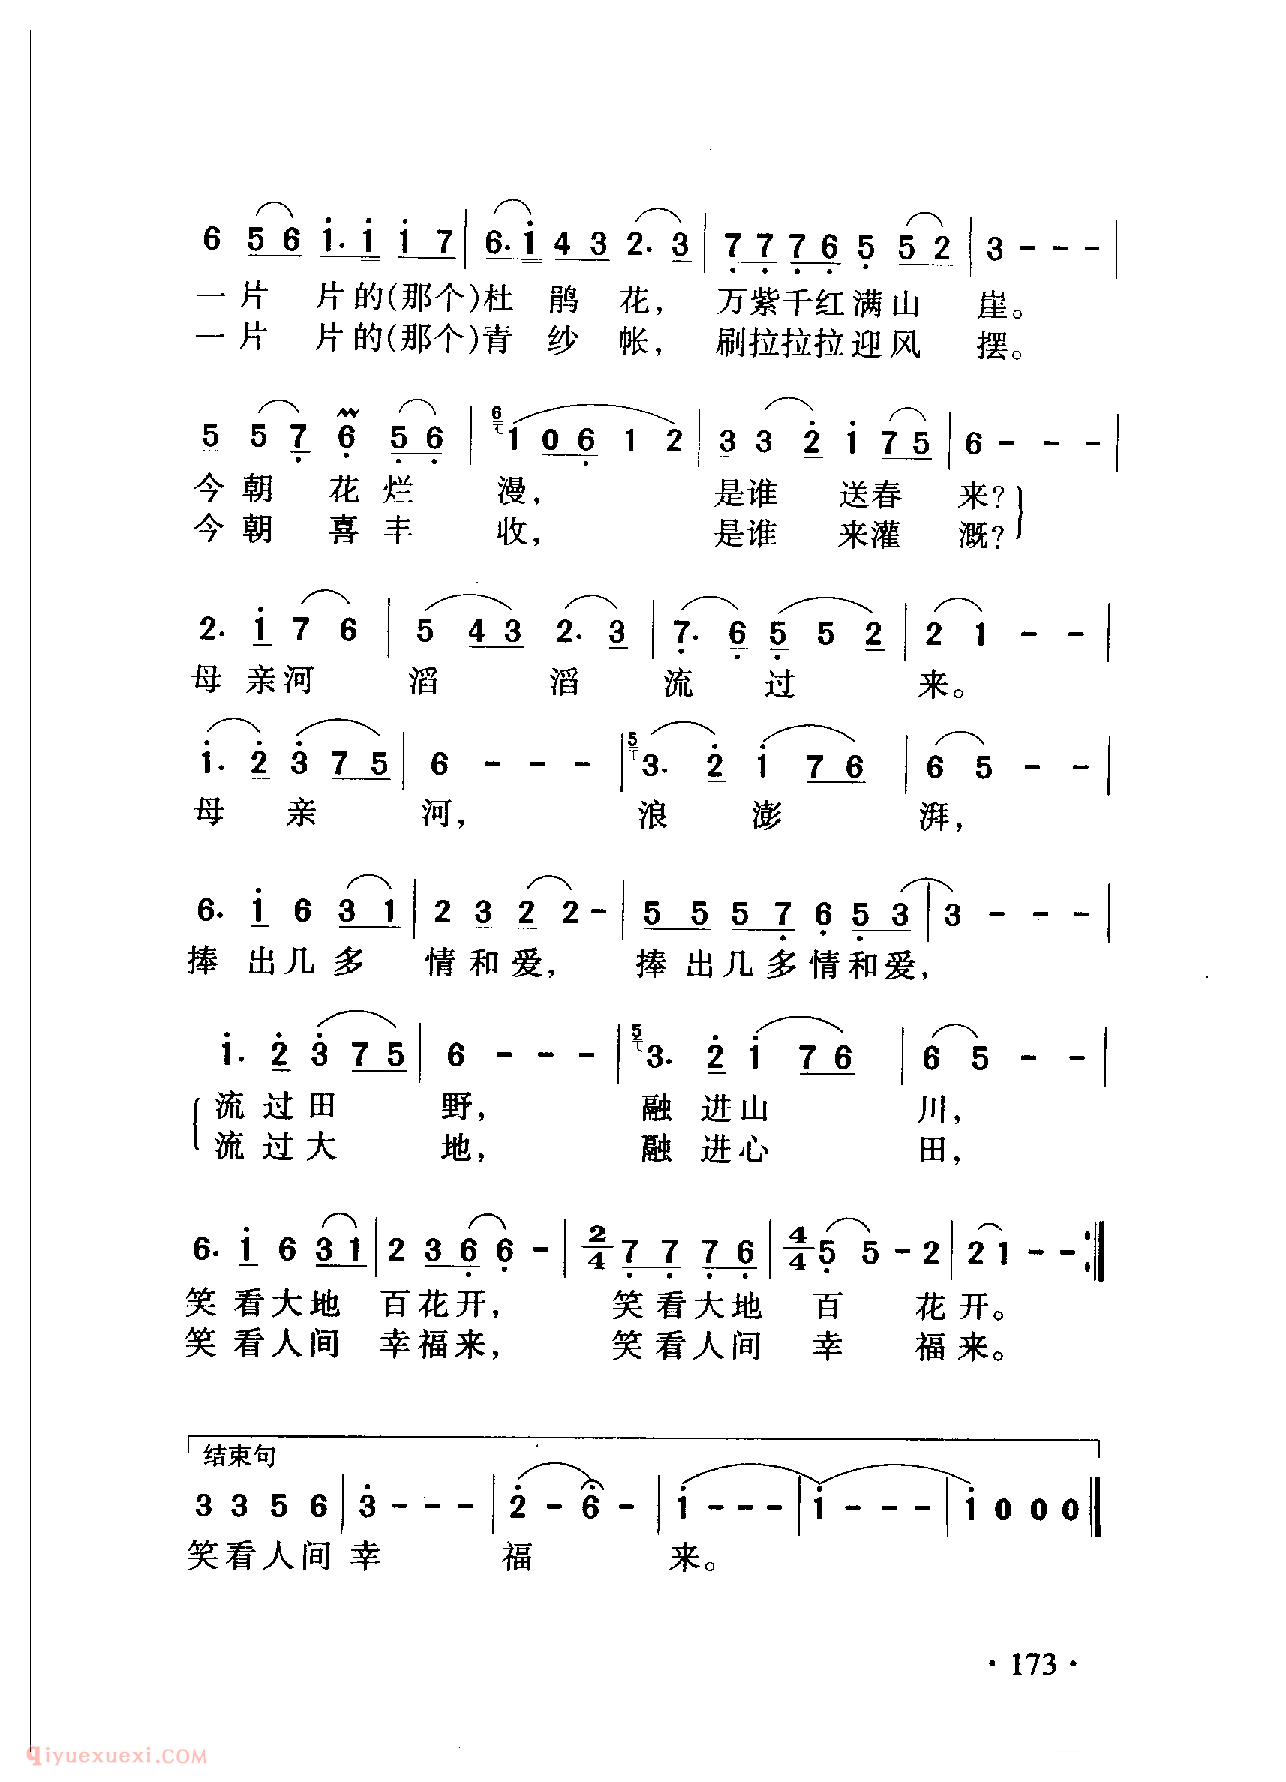 中国名歌[母亲河]乐谱